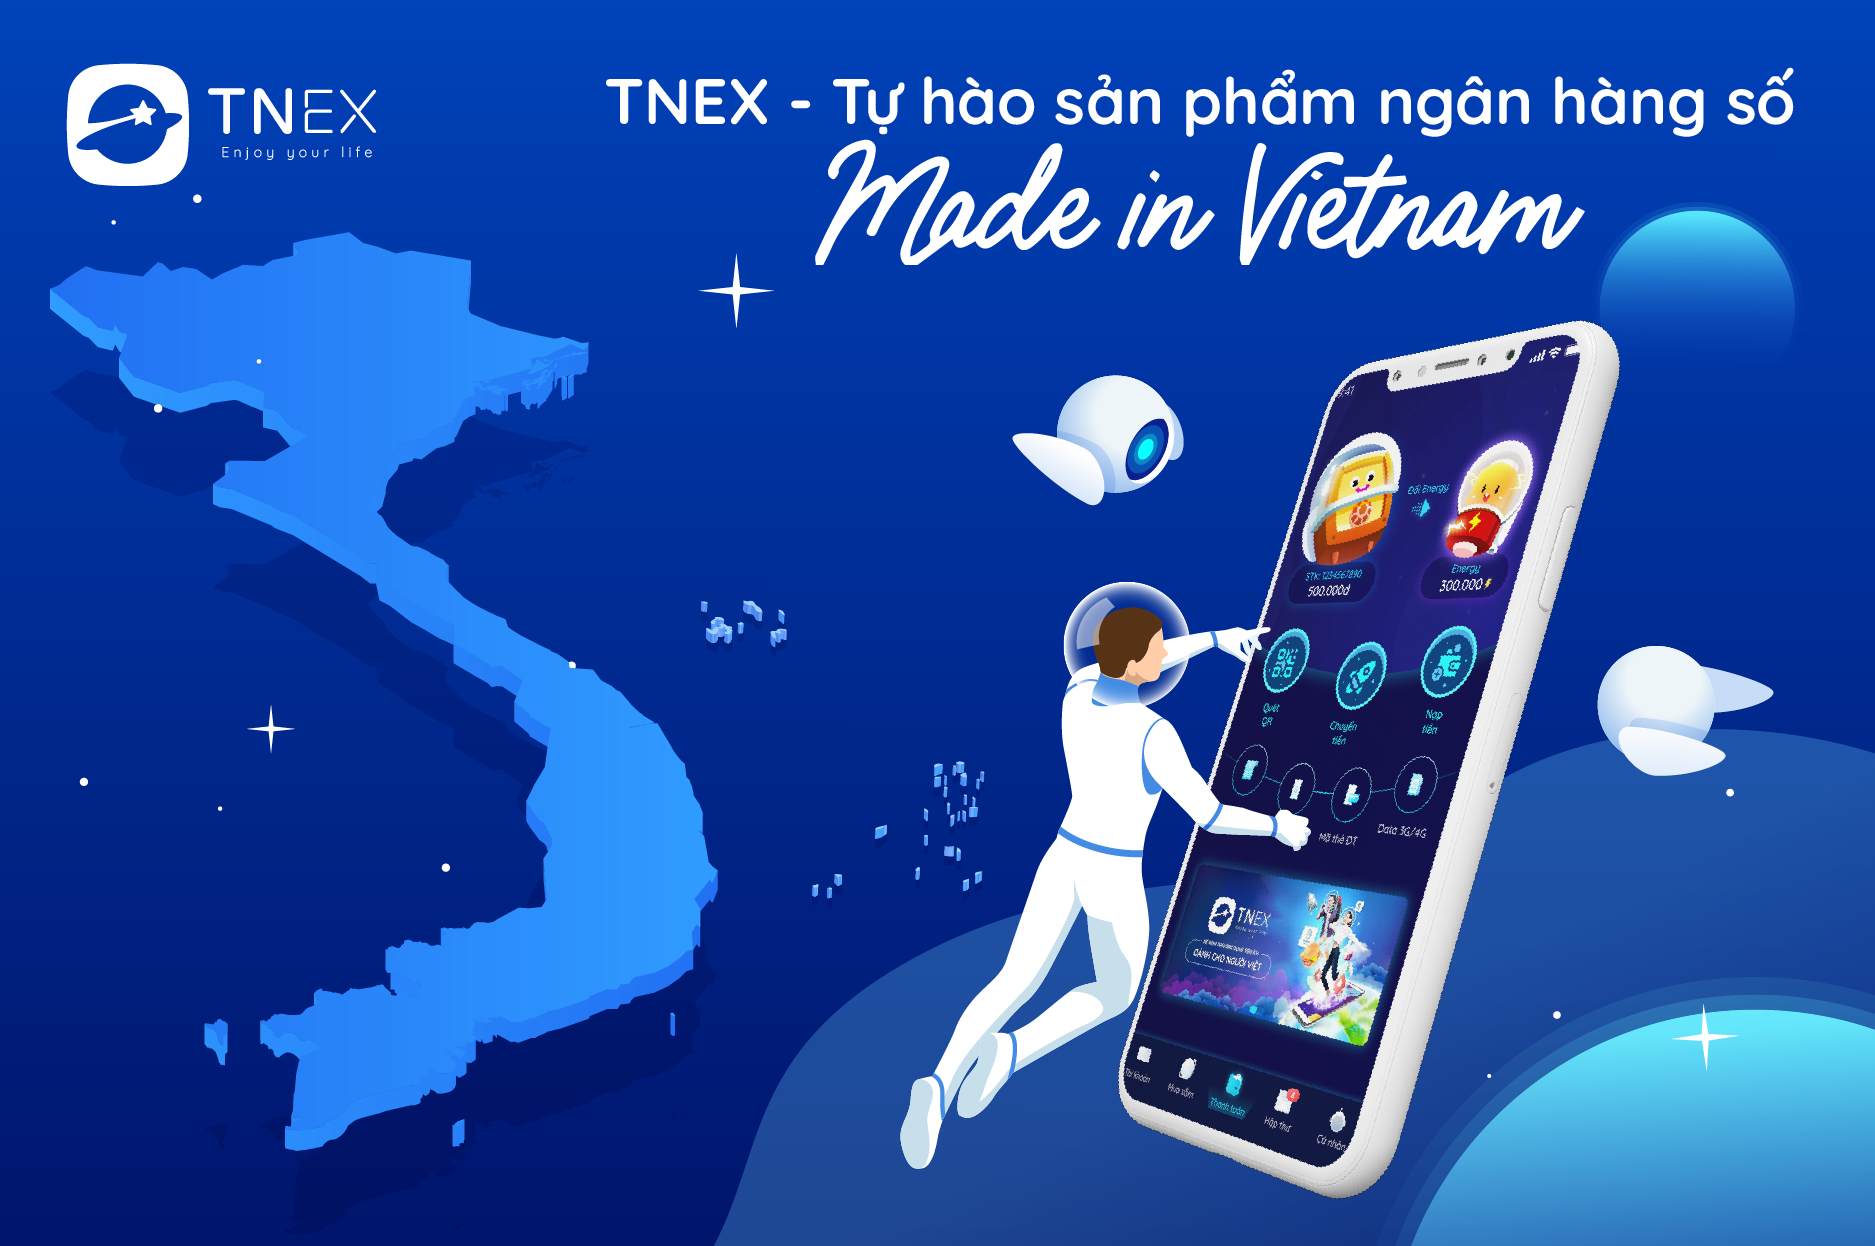 TNEX_Ngan hang so Made in Vietnam